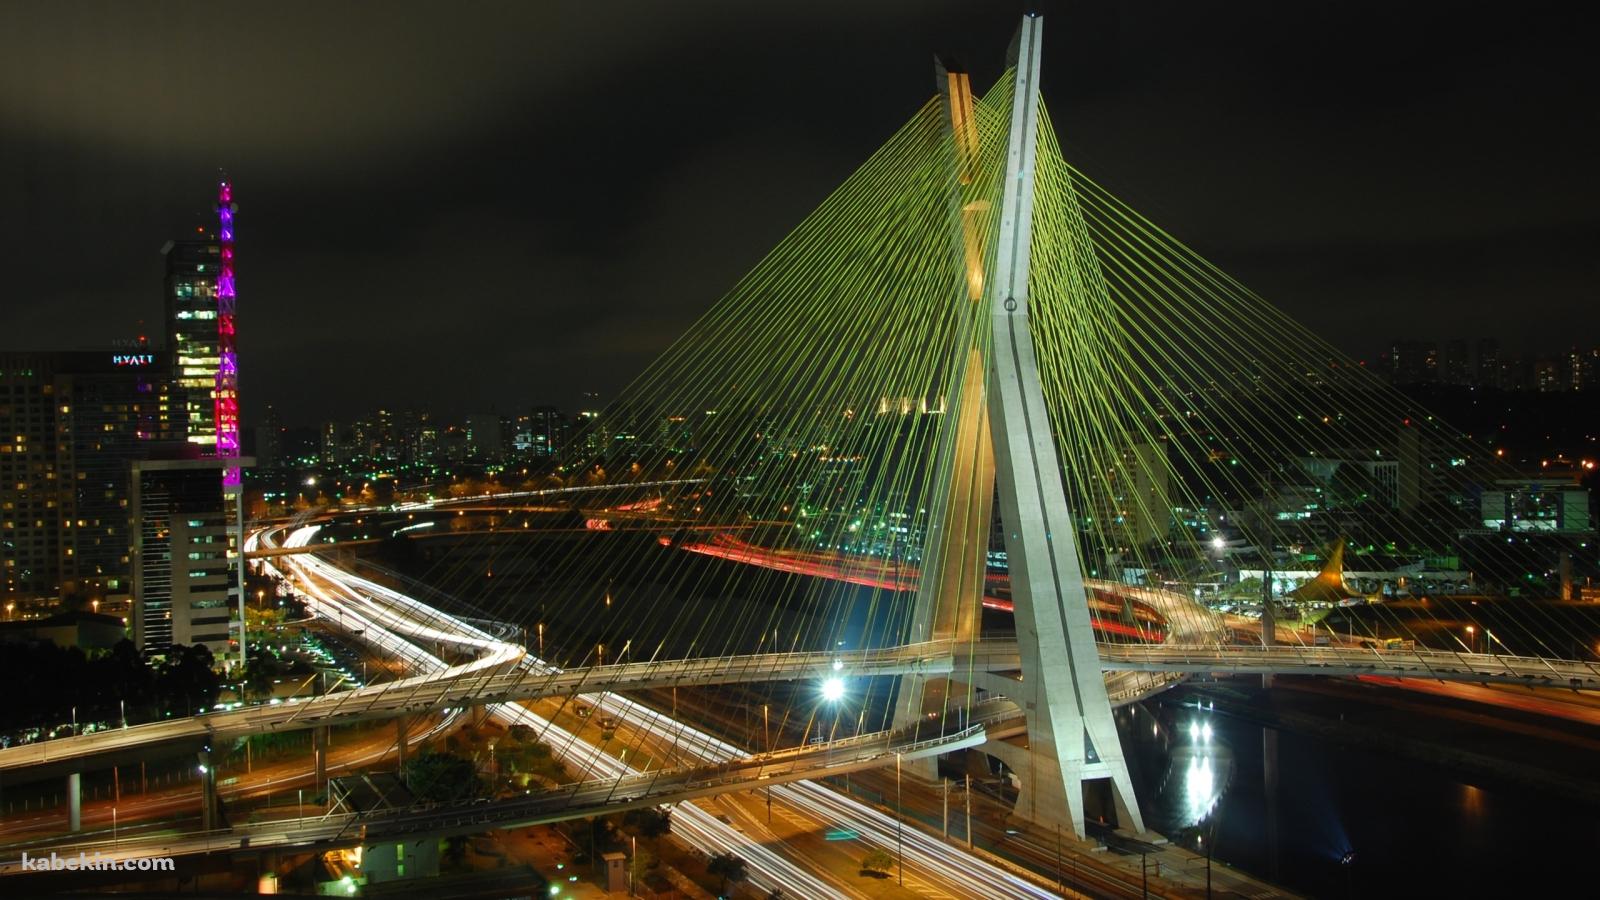 ブラジル オクタヴィオ・フリアス・ジ・オリヴェイラ橋の壁紙(1600px x 900px) 高画質 PC・デスクトップ用